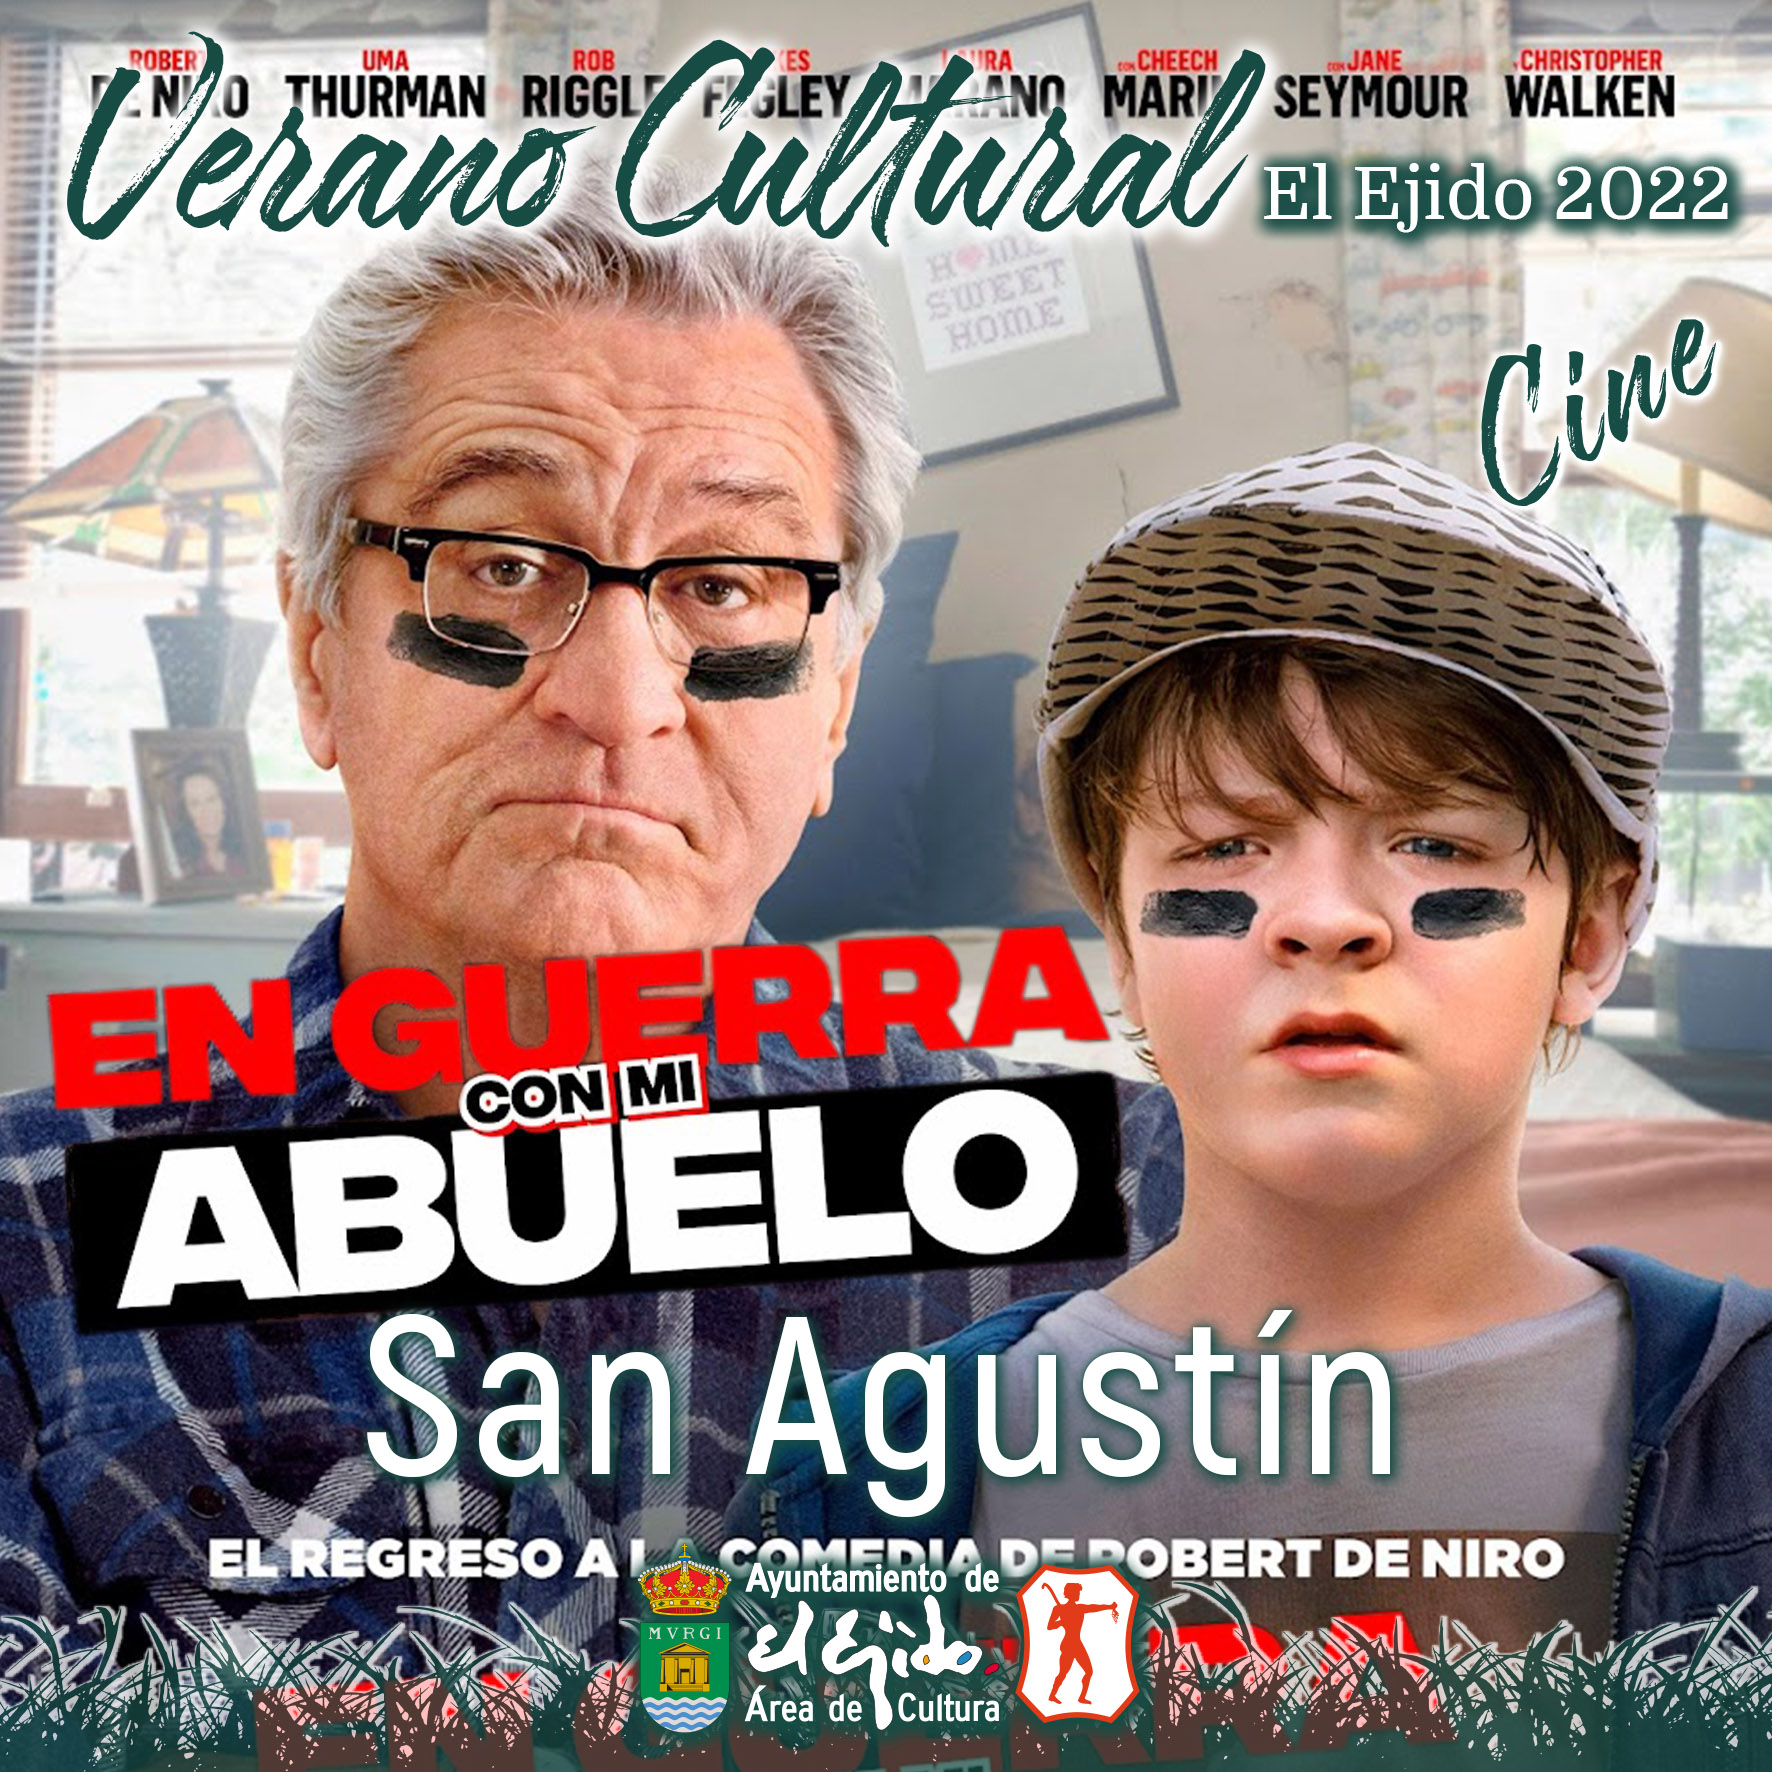 Verano Cultural 2022 de El Ejido – Cine – San Agustín – En guerra con mi abuelo